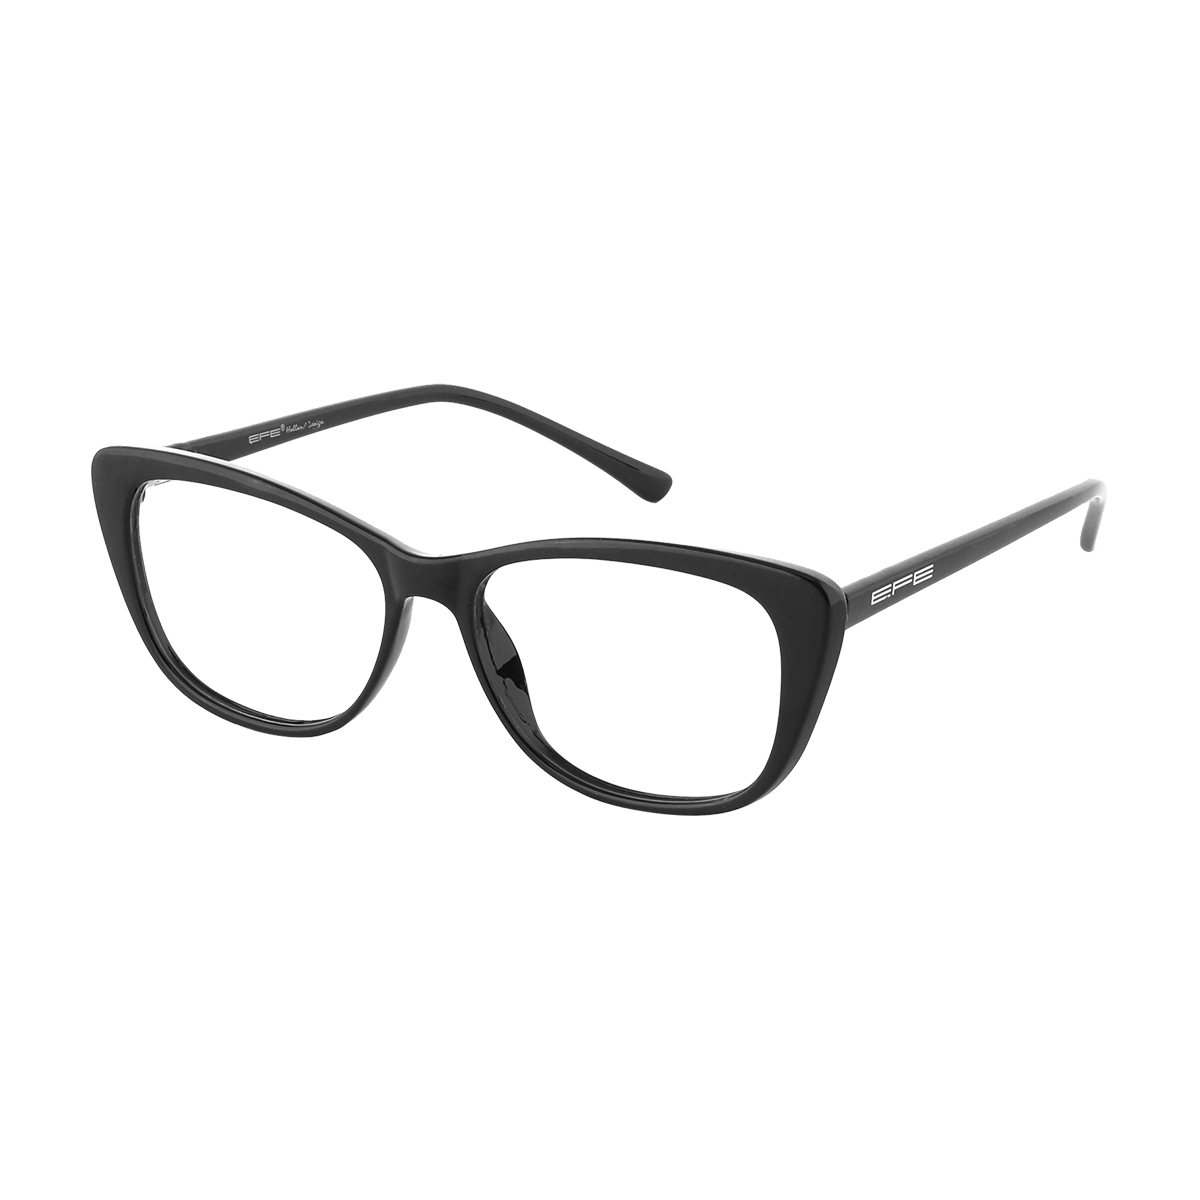 Haley - Cat-eye Black Reading Glasses for Women